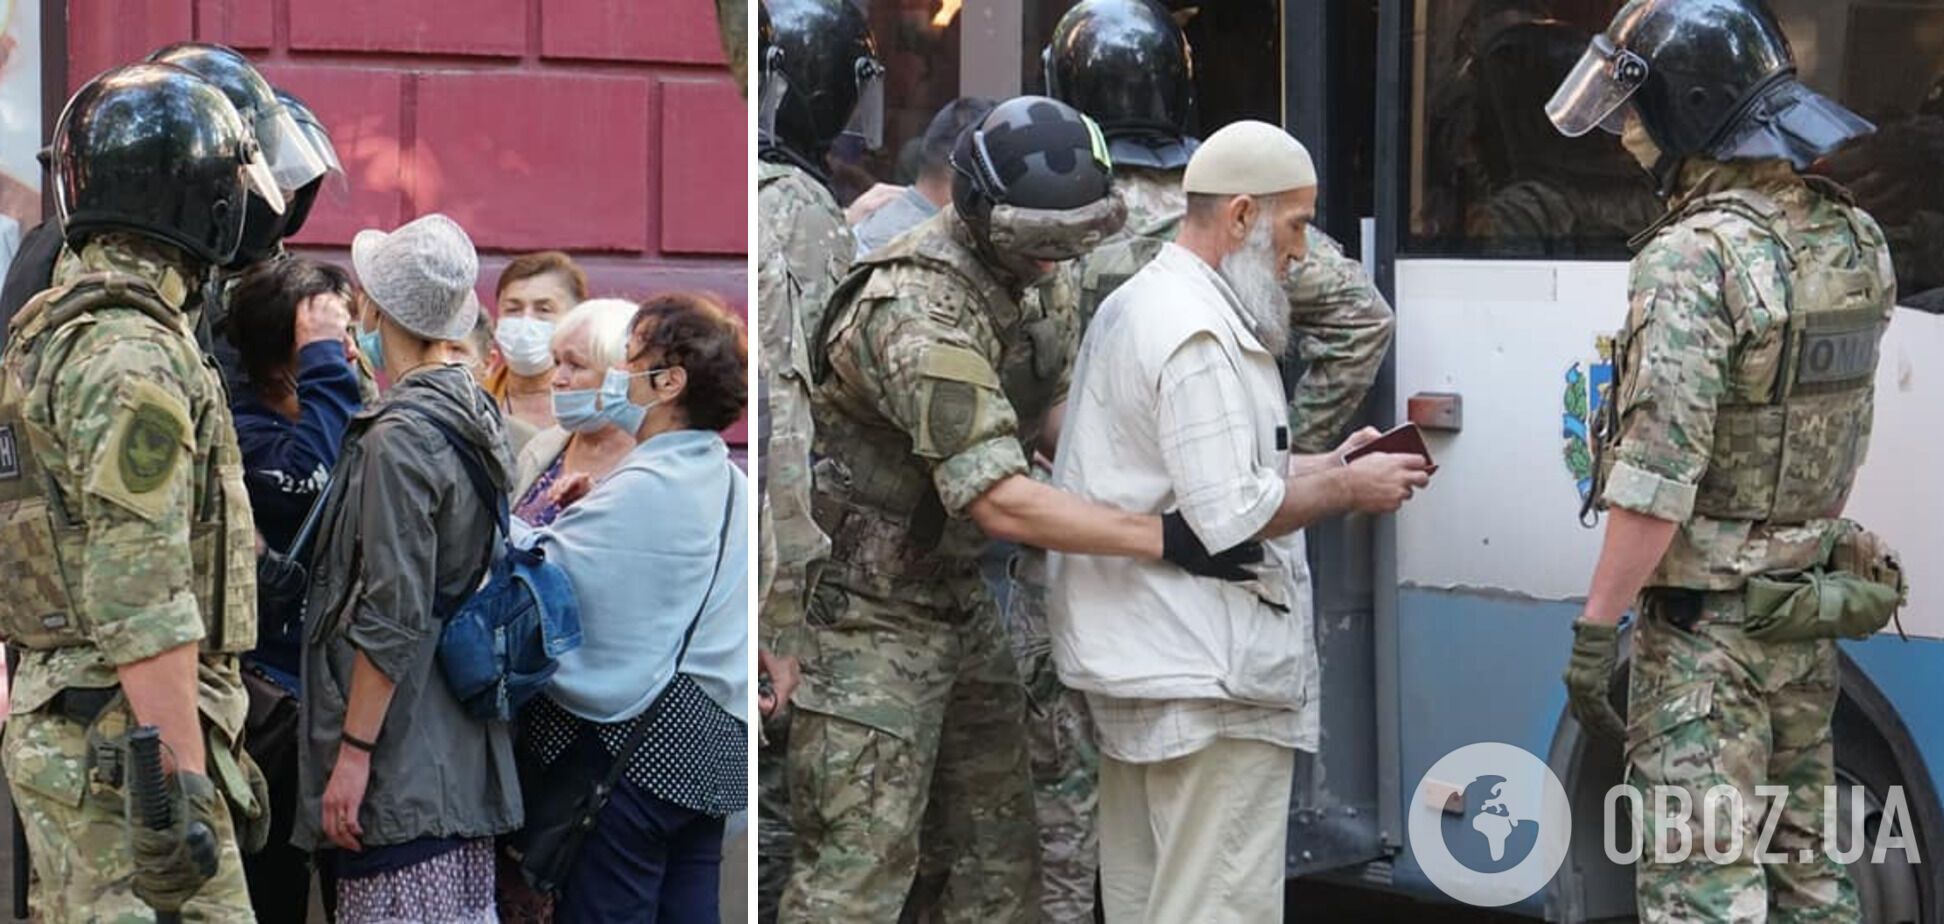 ФСБ провела затримання кримських татар у Криму